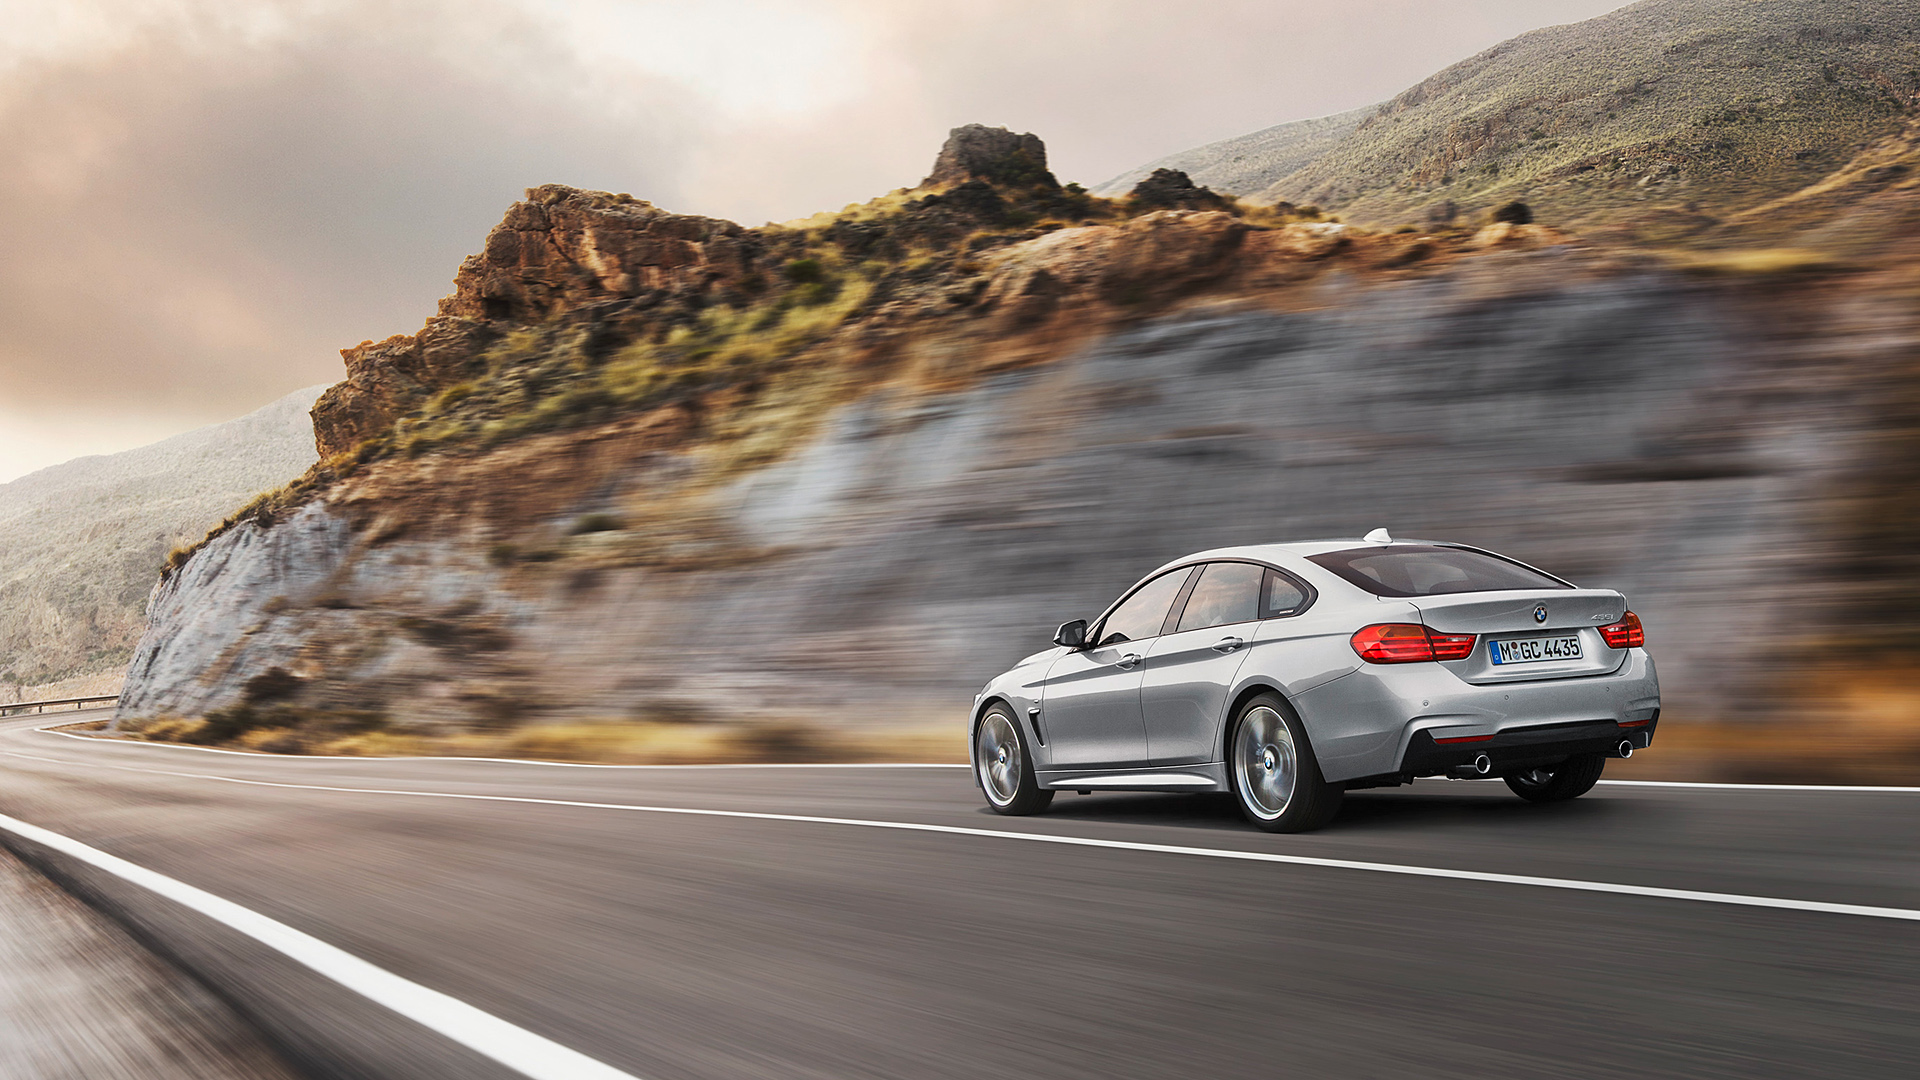  2015 BMW 4-Series Gran Coupe Wallpaper.